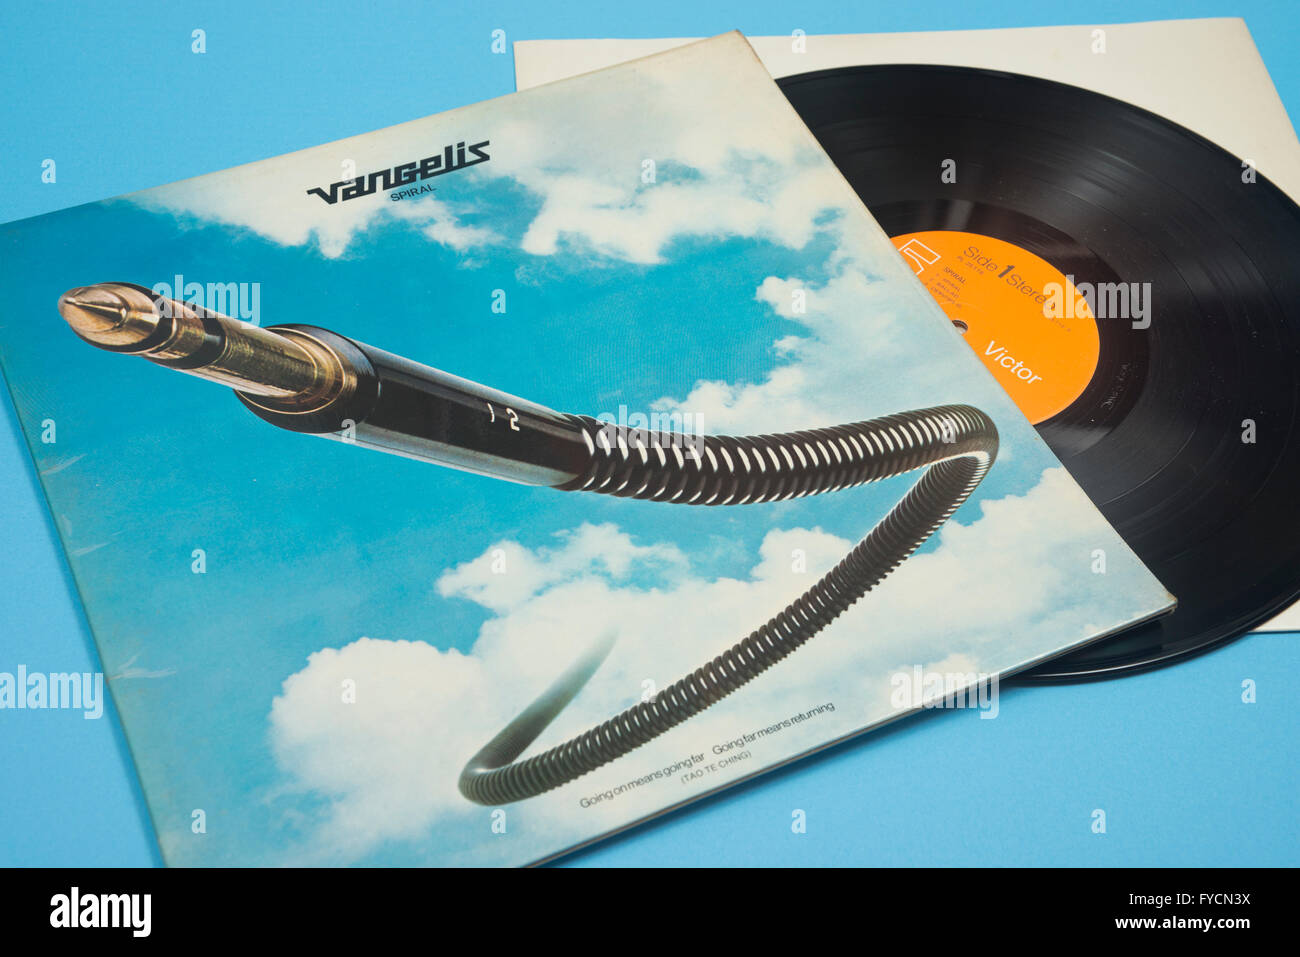 Álbum espiral en vinilo por Vangelis con manguito original artwork Foto de stock